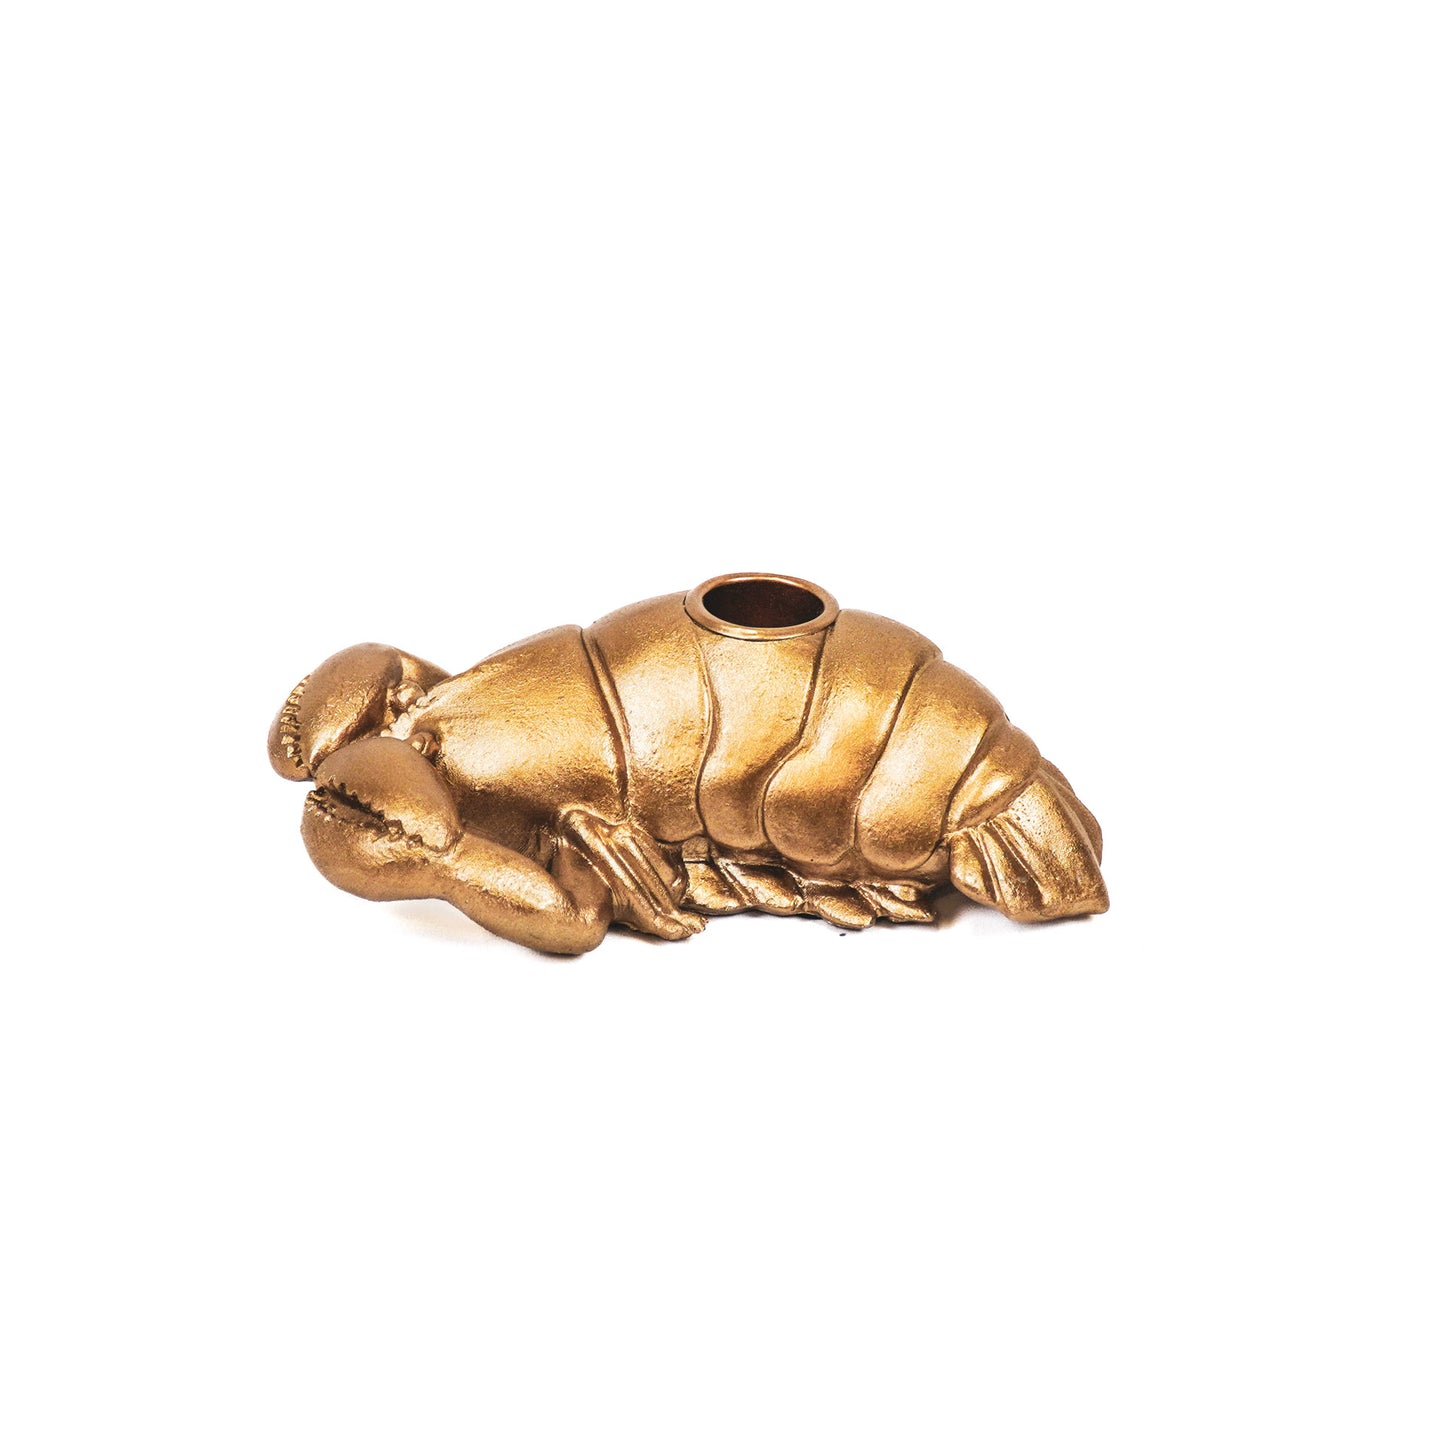 HV Lobster Candle holder - Gold - 16x10x5cm